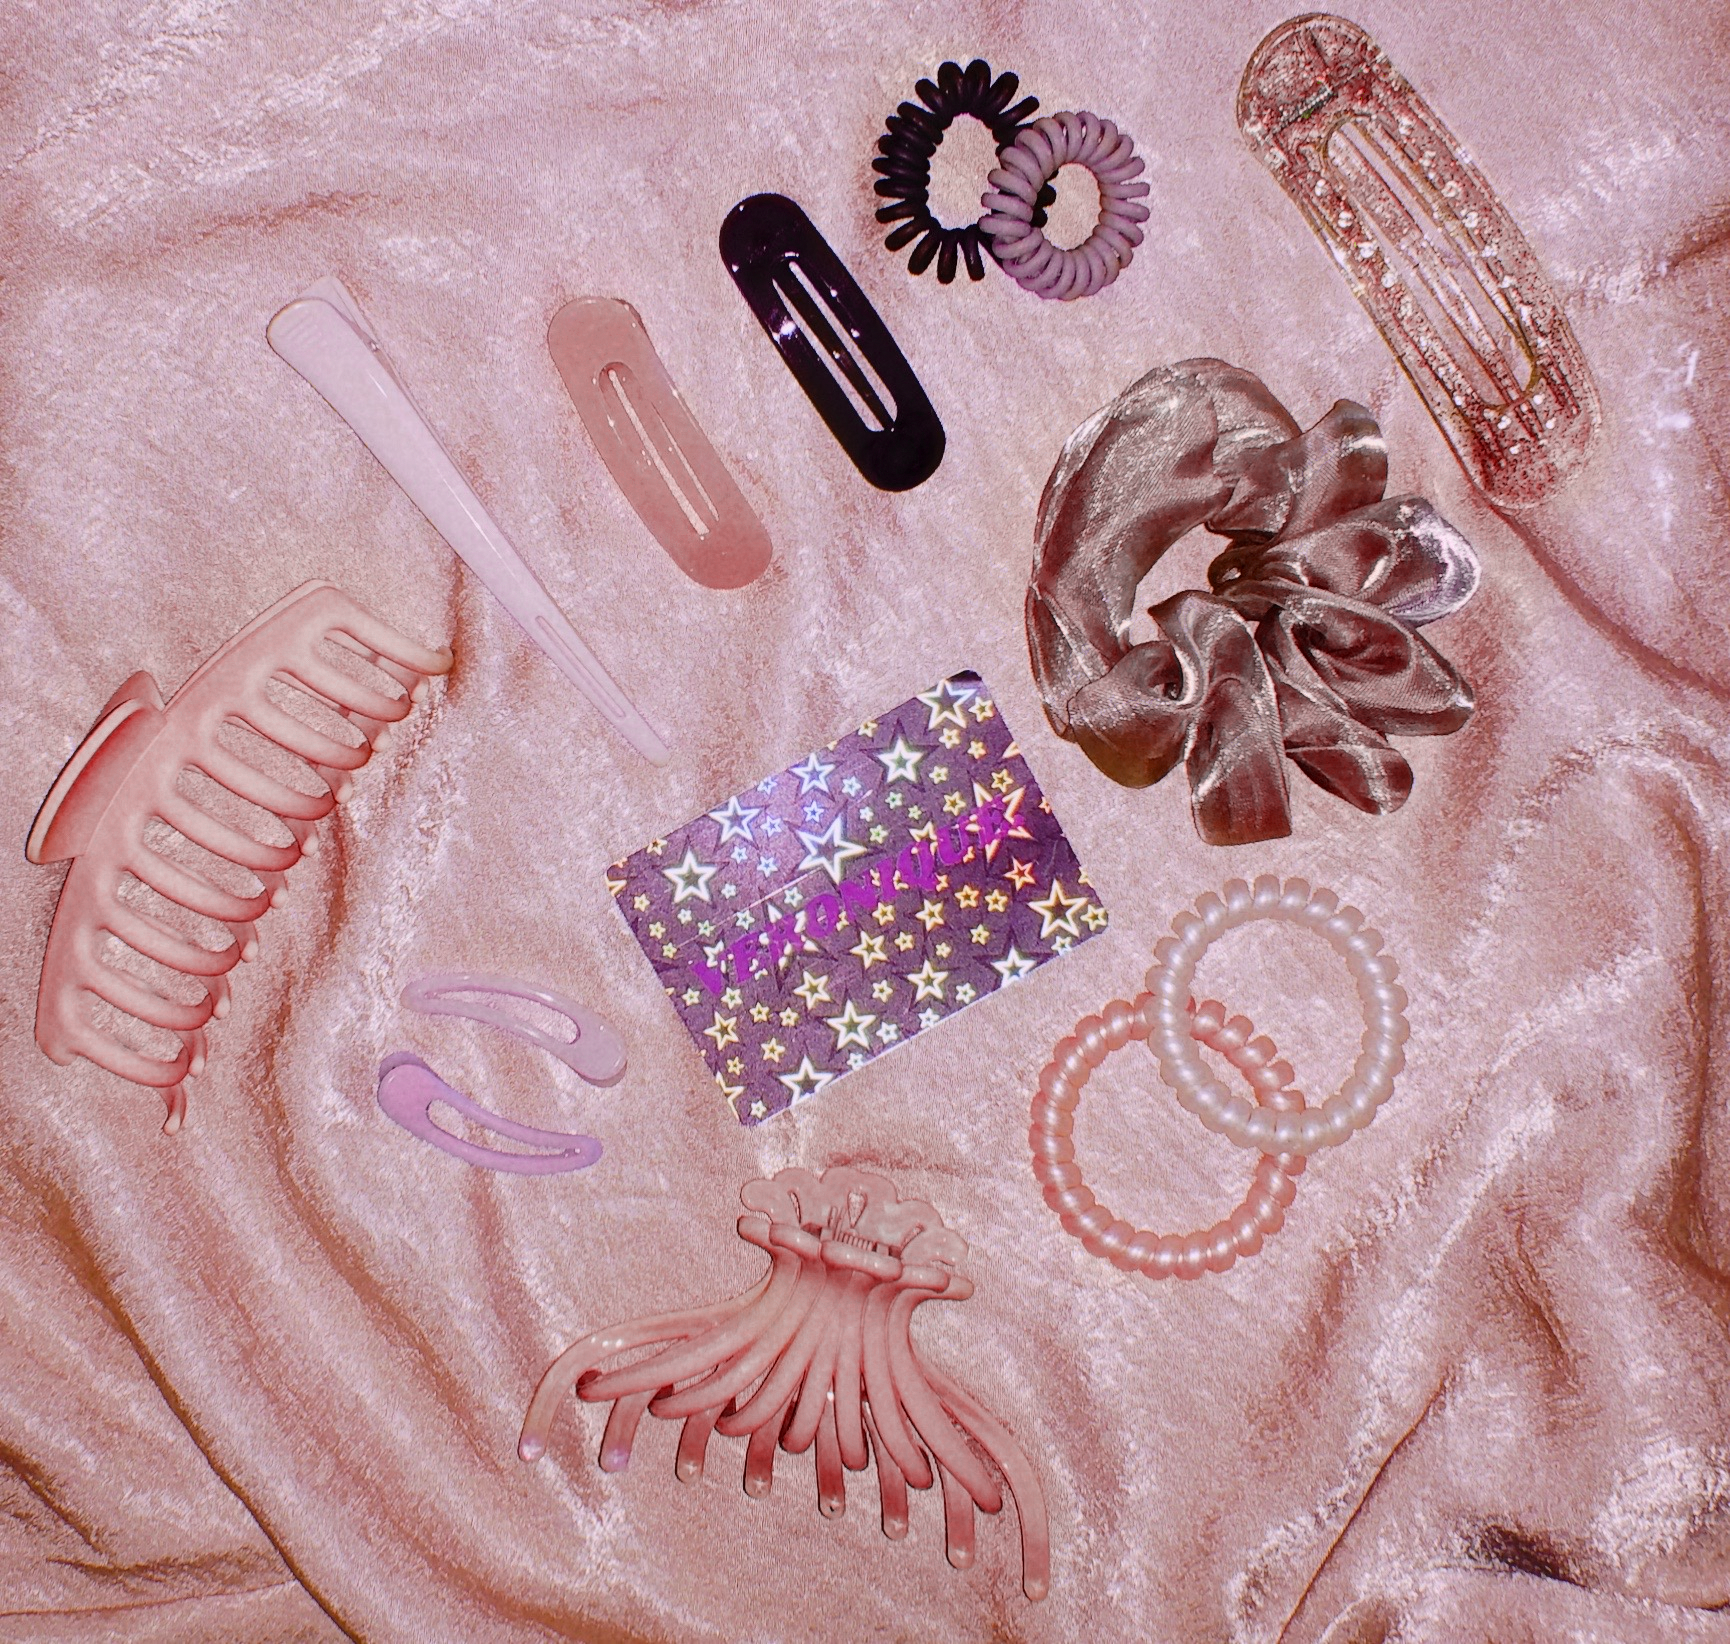 Pretty in Pink Bundle by Veronique